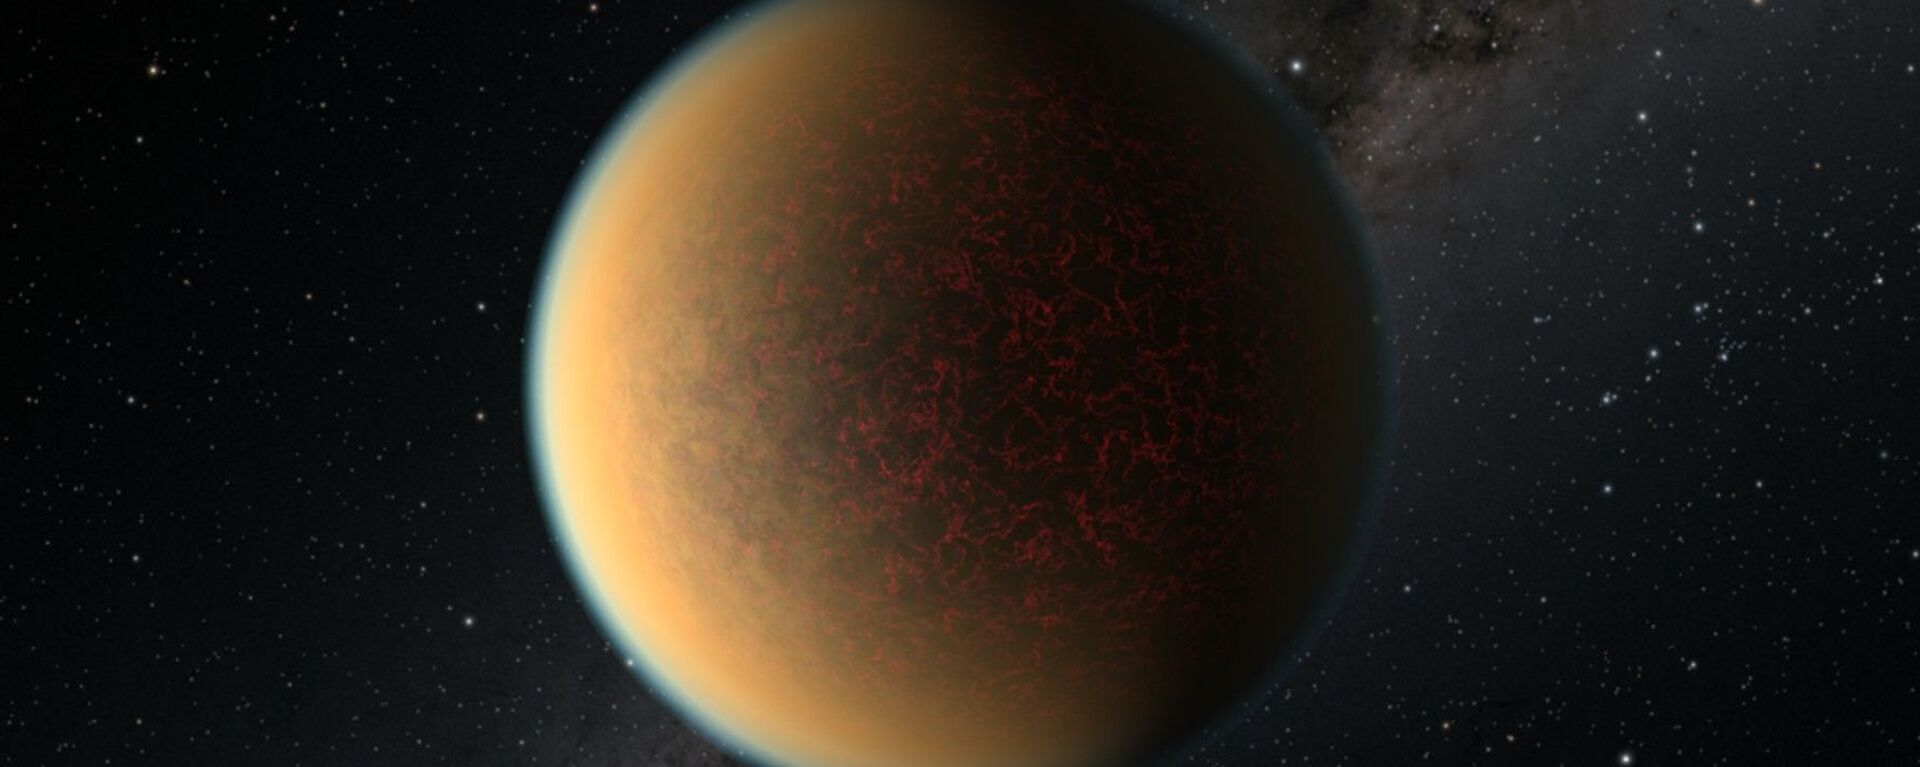 Esta é uma impressão artística do exoplaneta rochoso do tamanho da Terra GJ 1132 b, localizado a 41 anos-luz de distância em torno de uma estrela anã vermelha. Cientistas usando o telescópio espacial Hubble da NASA encontraram evidências de que este planeta pode ter perdido sua atmosfera original, mas ganharam uma segunda que contém uma mistura tóxica de hidrogênio, metano e cianeto de hidrogênio - Sputnik Brasil, 1920, 26.11.2021